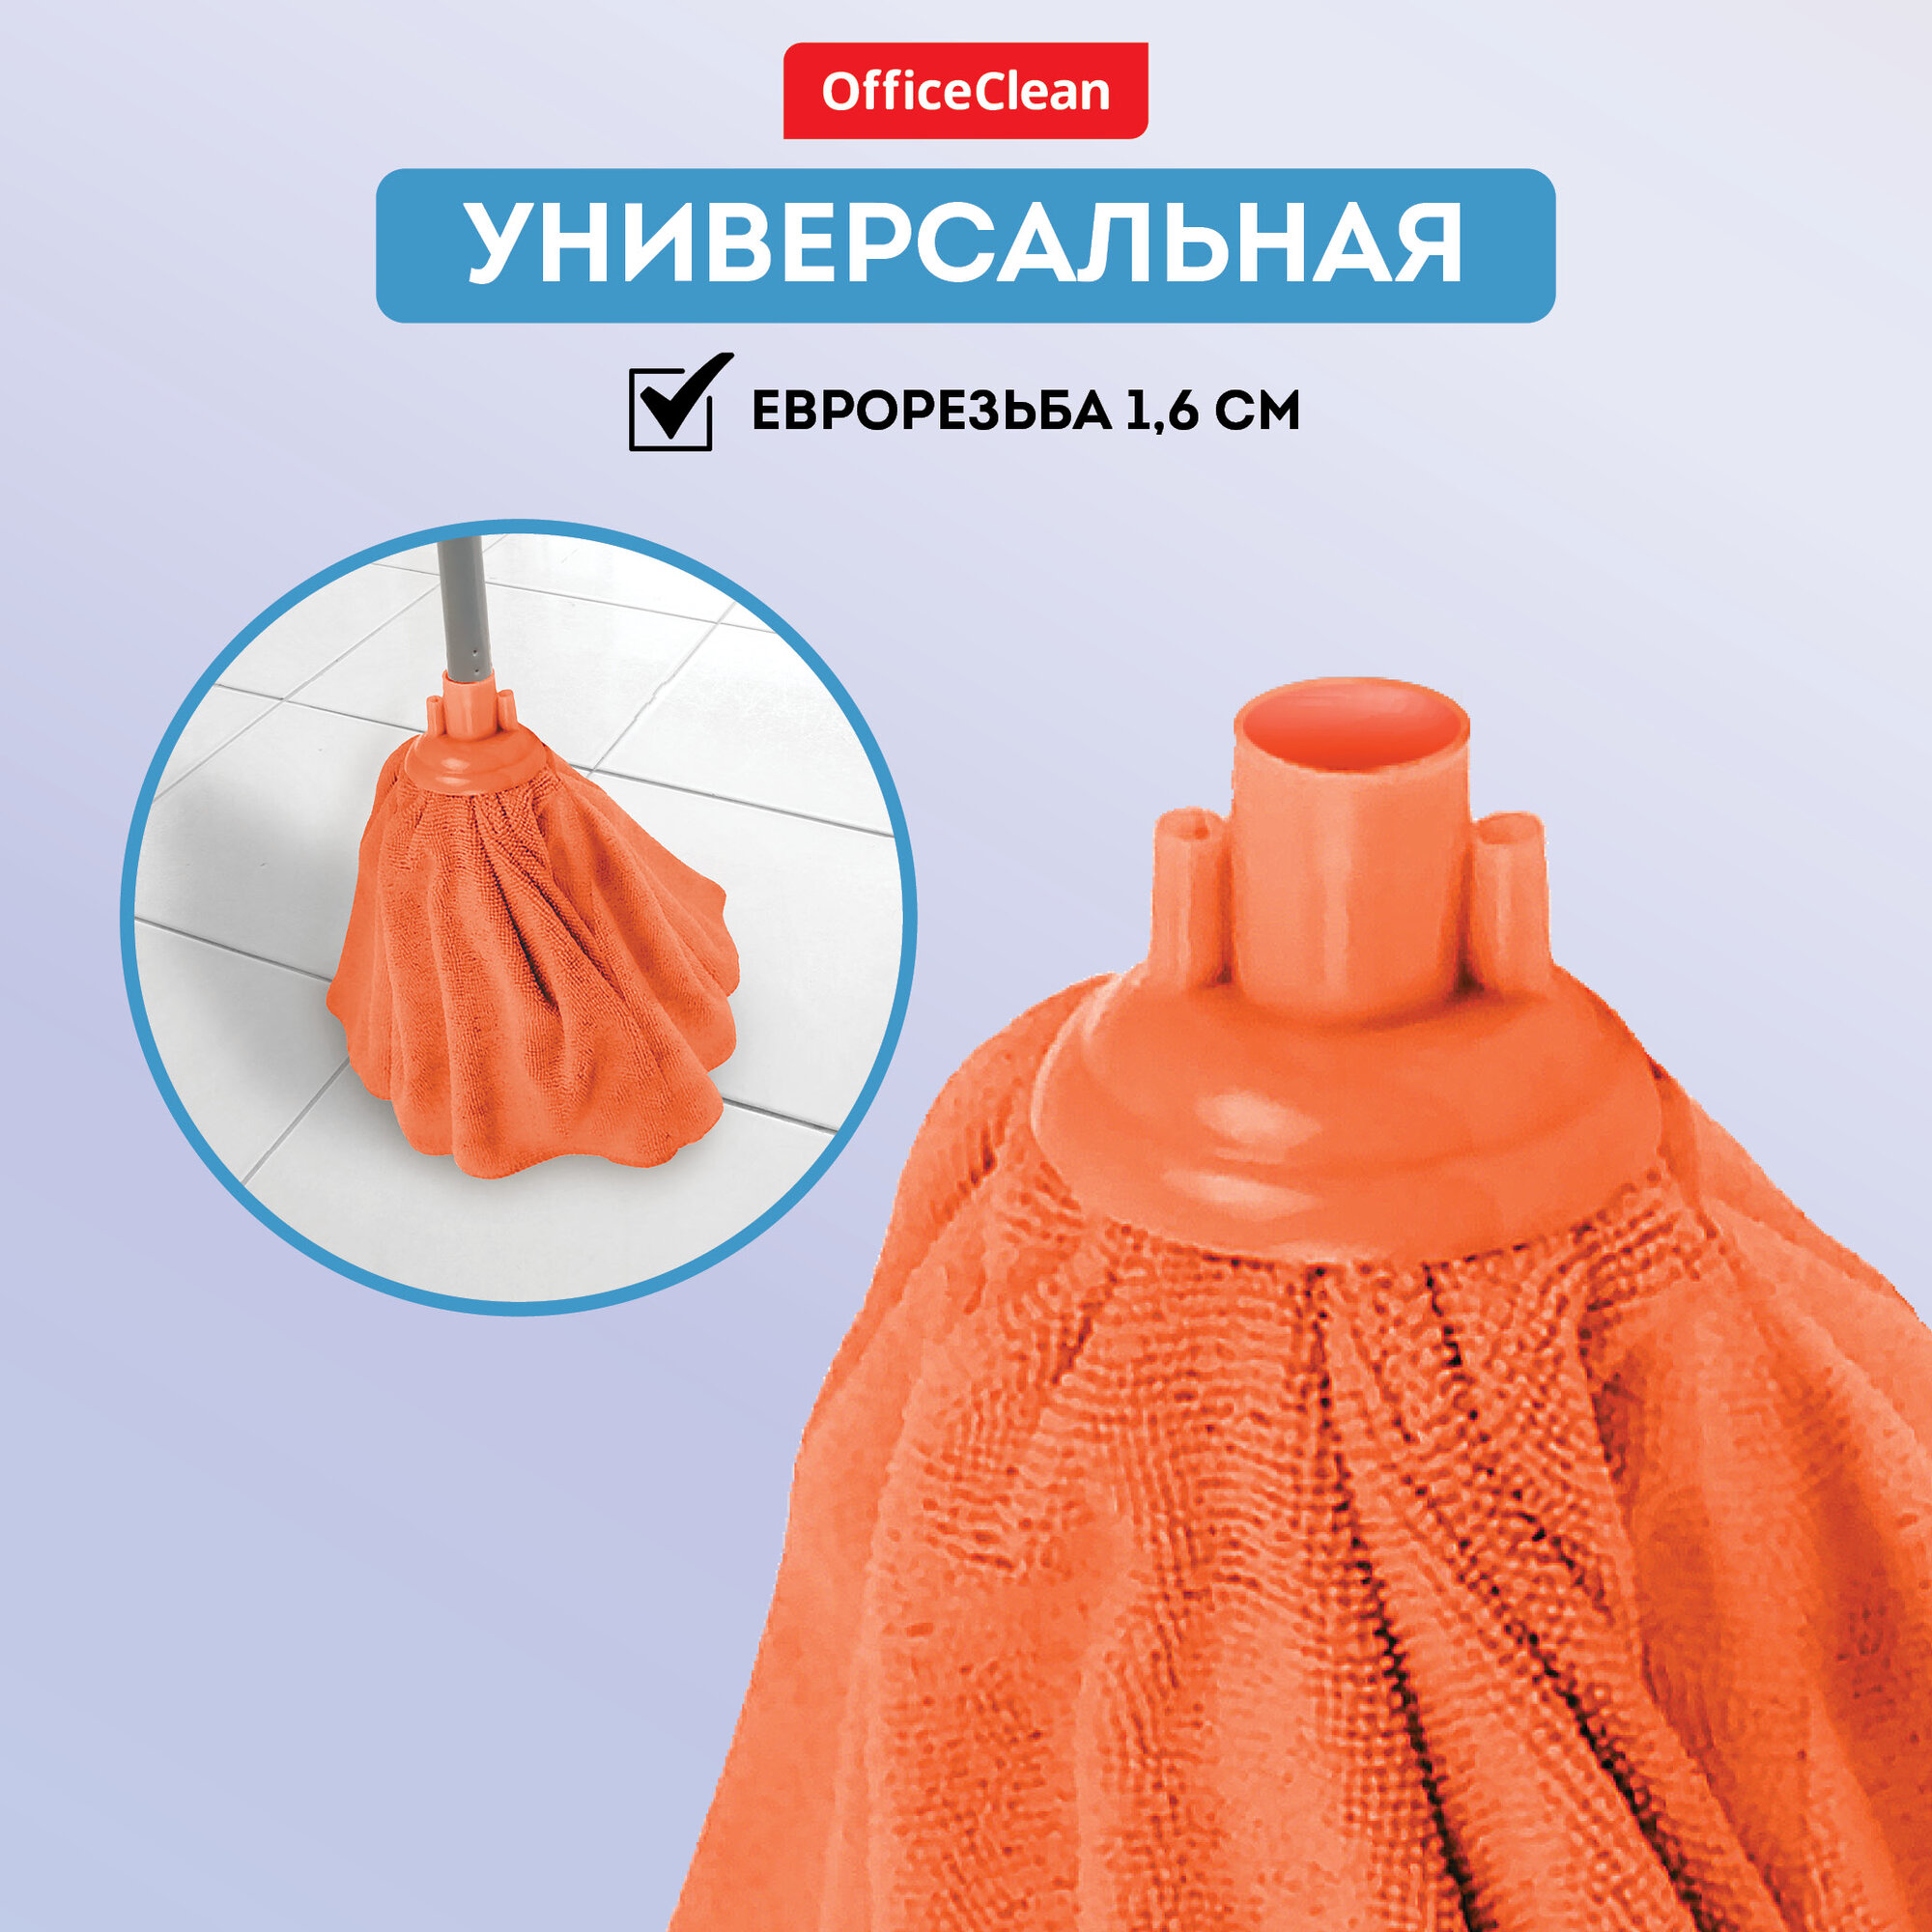 Насадка для швабры юбка сменная 28 см / тряпка МОП OfficeClean Professional из микрофибры для уборки пола